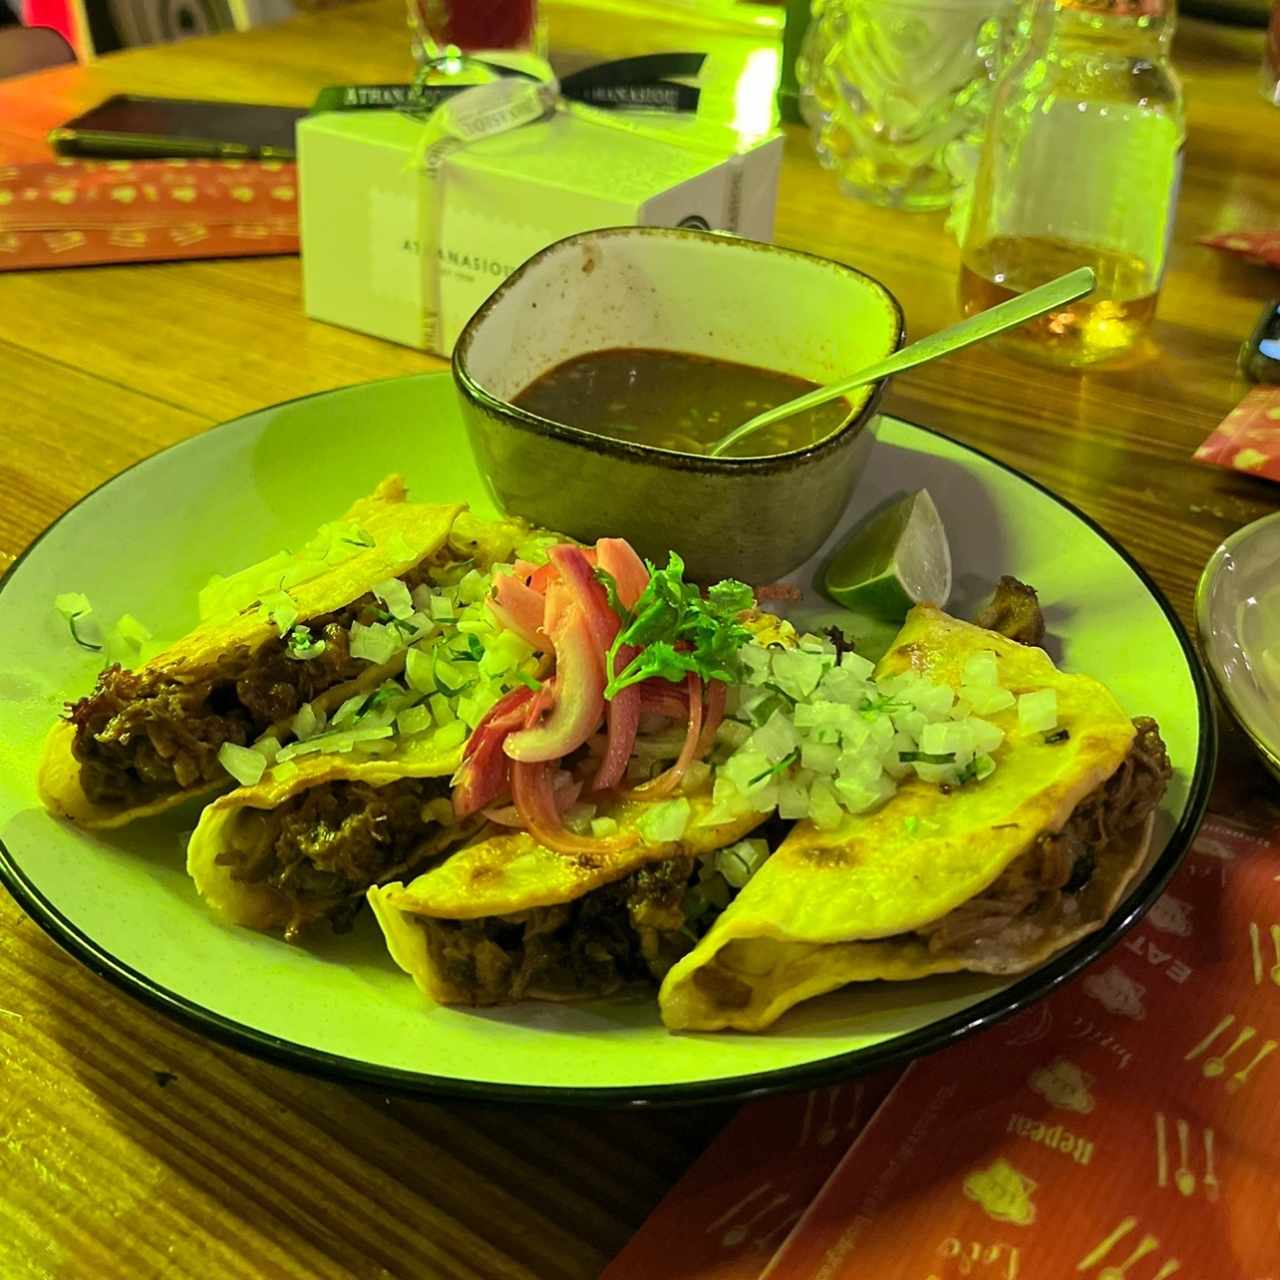 Tacos de Birria de Res // Beef Birria Tacos